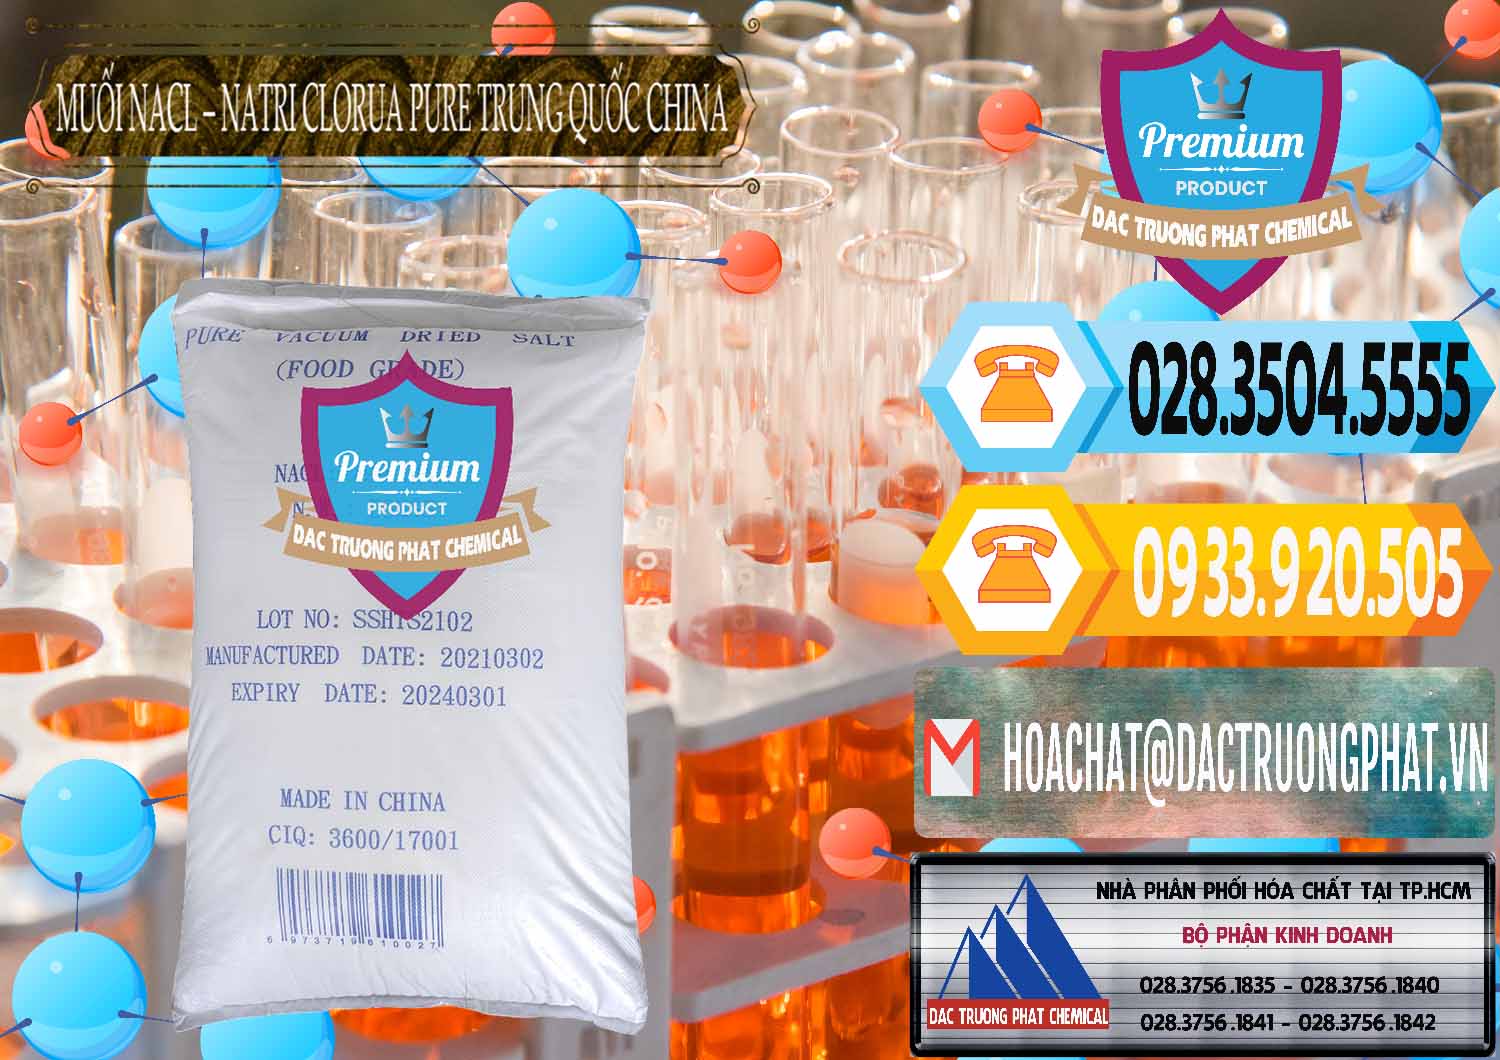 Chuyên cung ứng - bán Muối NaCL – Sodium Chloride Pure Trung Quốc China - 0230 - Cung cấp và kinh doanh hóa chất tại TP.HCM - hoachattayrua.net